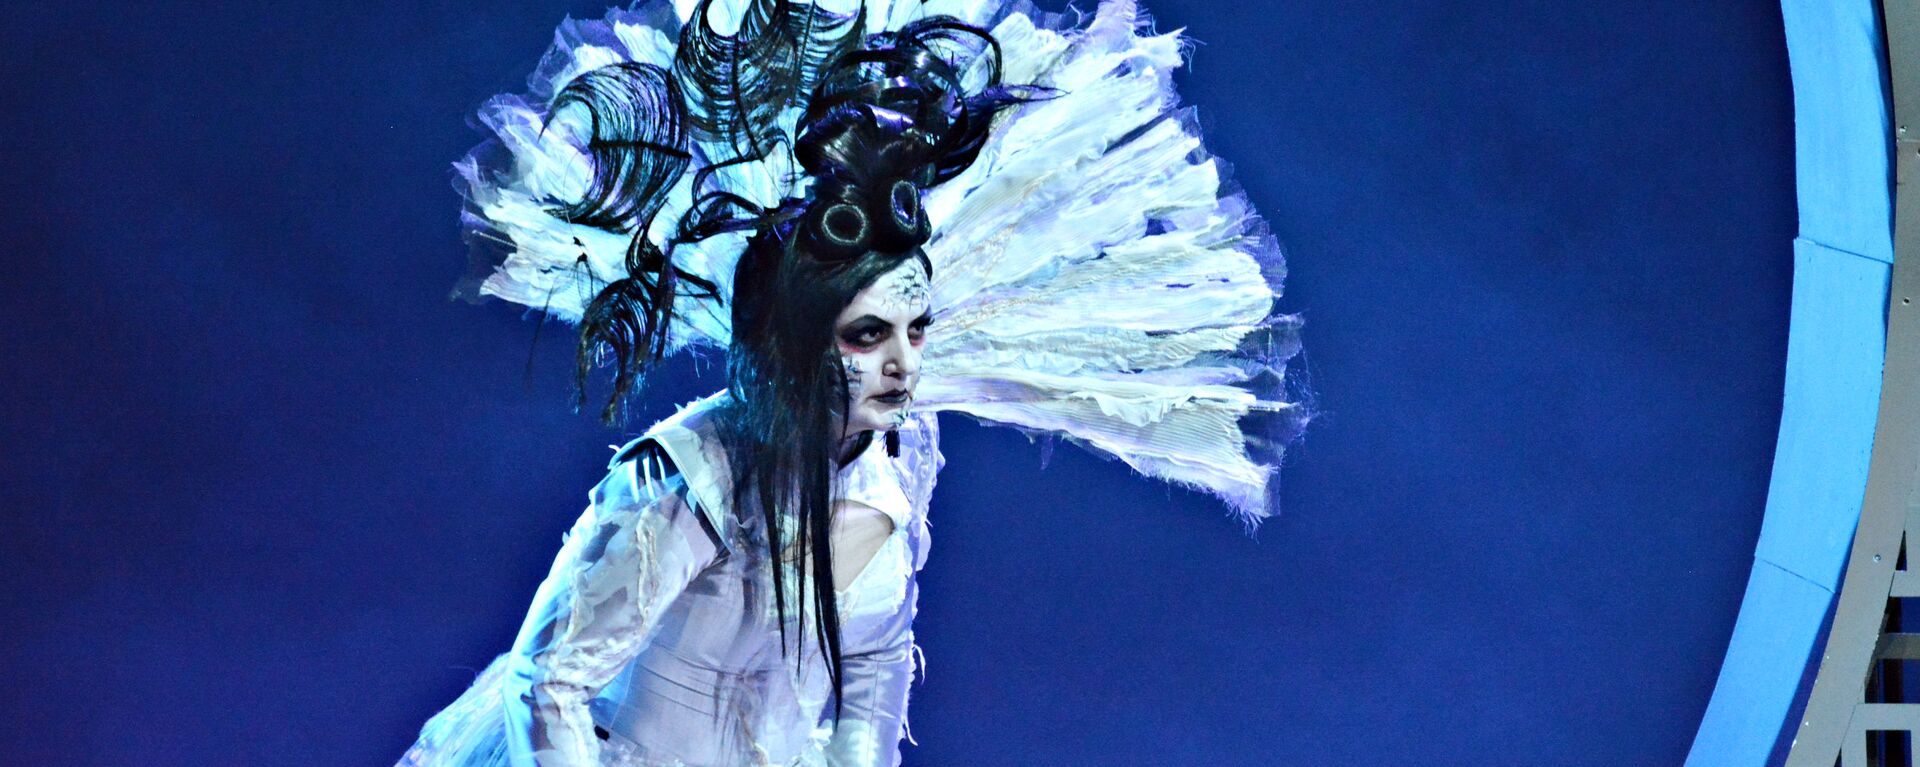 Выступление Алисы Гицба в театре Геликон-опера - Sputnik Абхазия, 1920, 06.02.2017